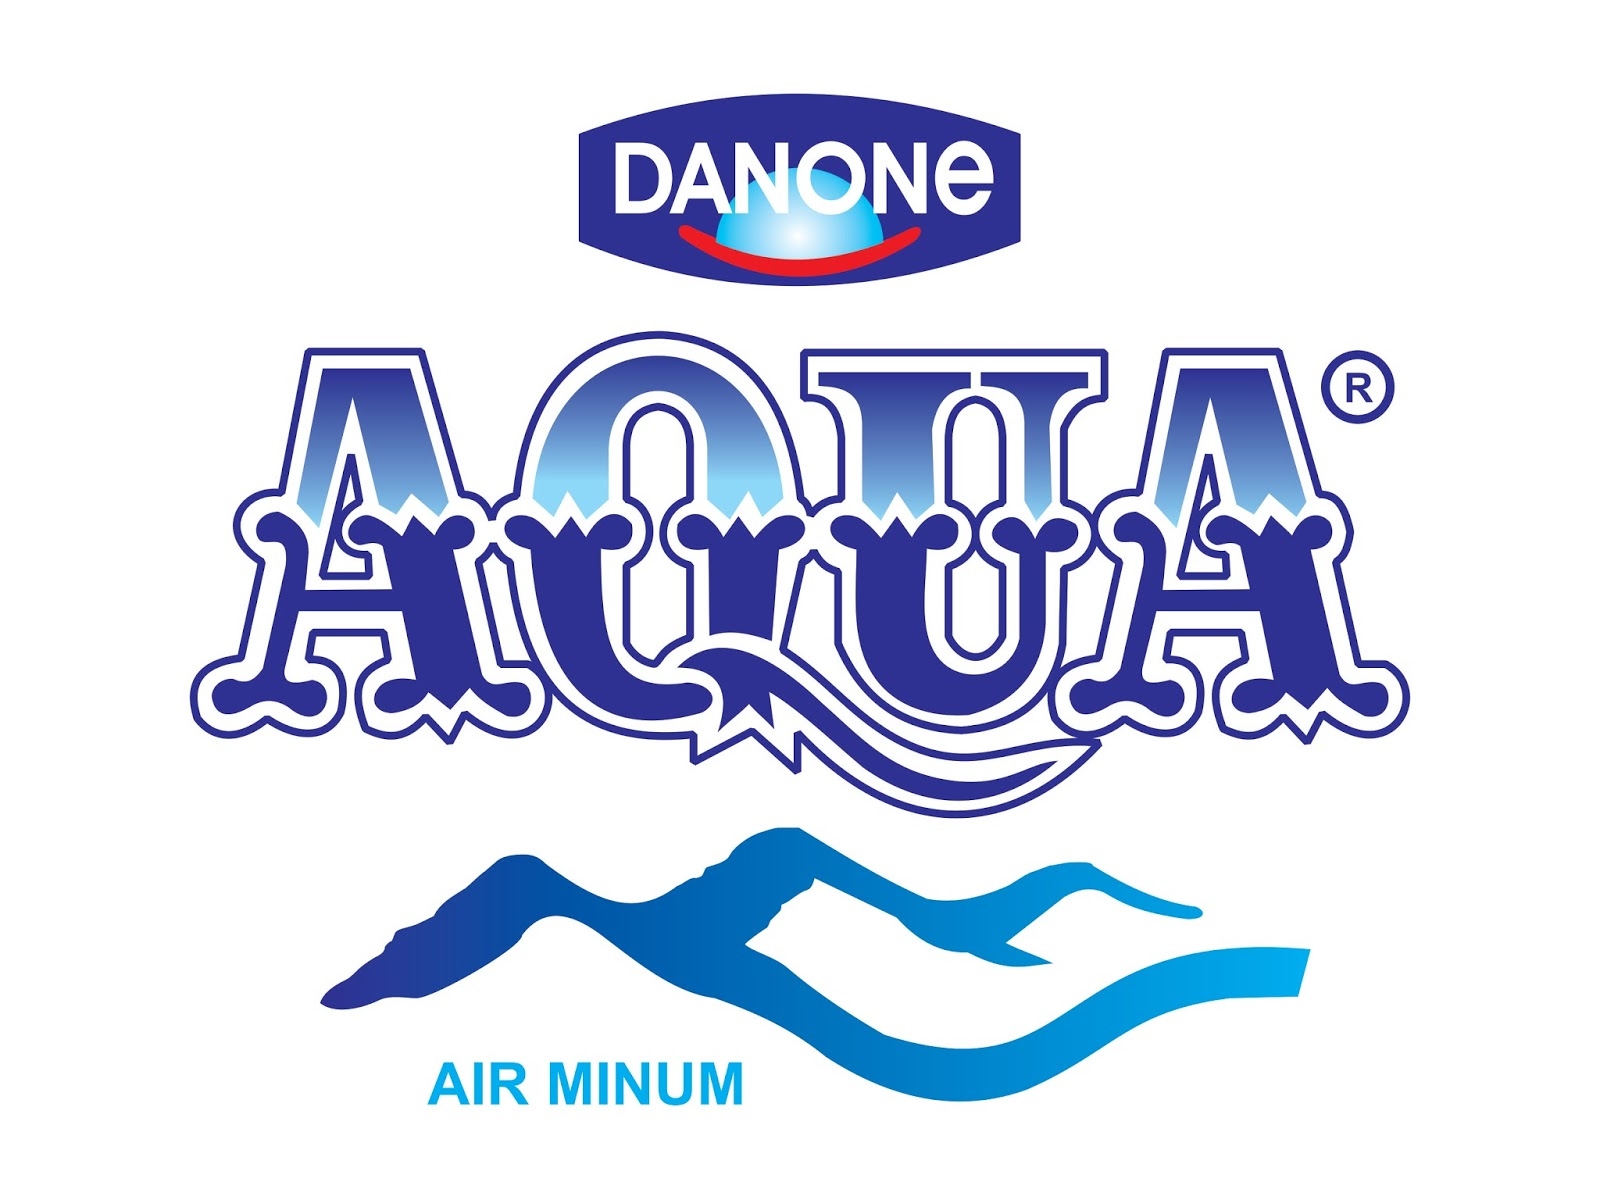 Danone-Aqua Mengajak Masyarakat Indonesia Tebarkan Kebaikan Di Ajang Asian Games 2018